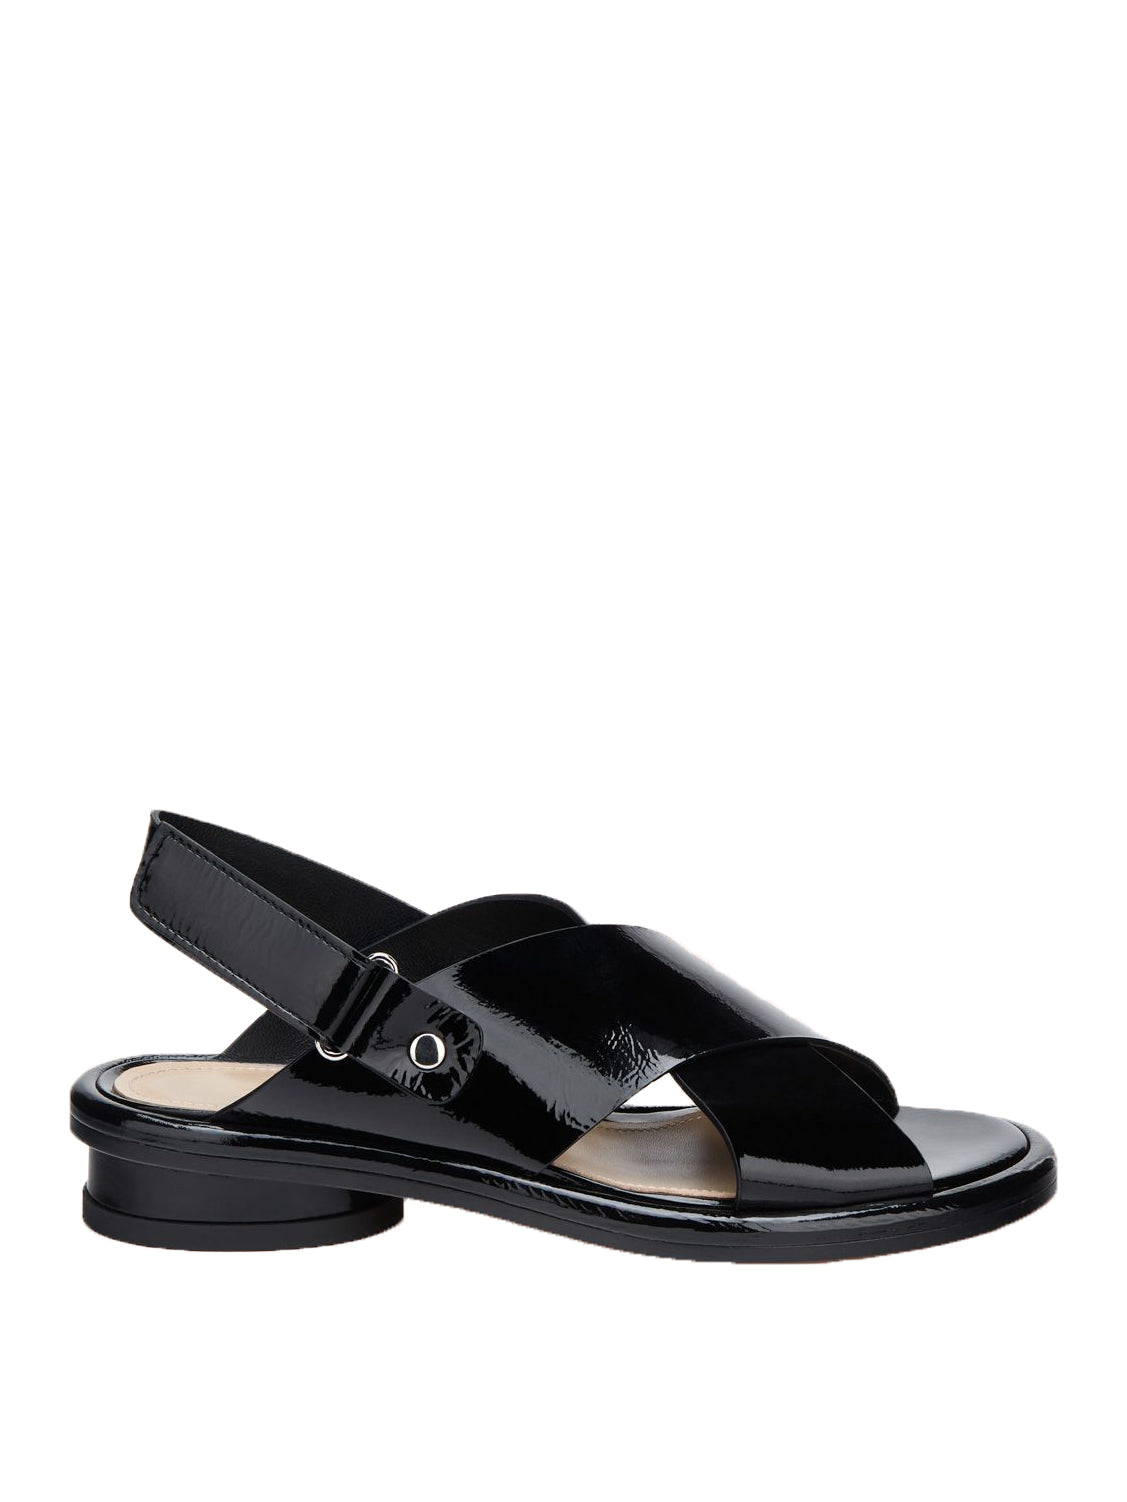 Alison criss sandals, patent black